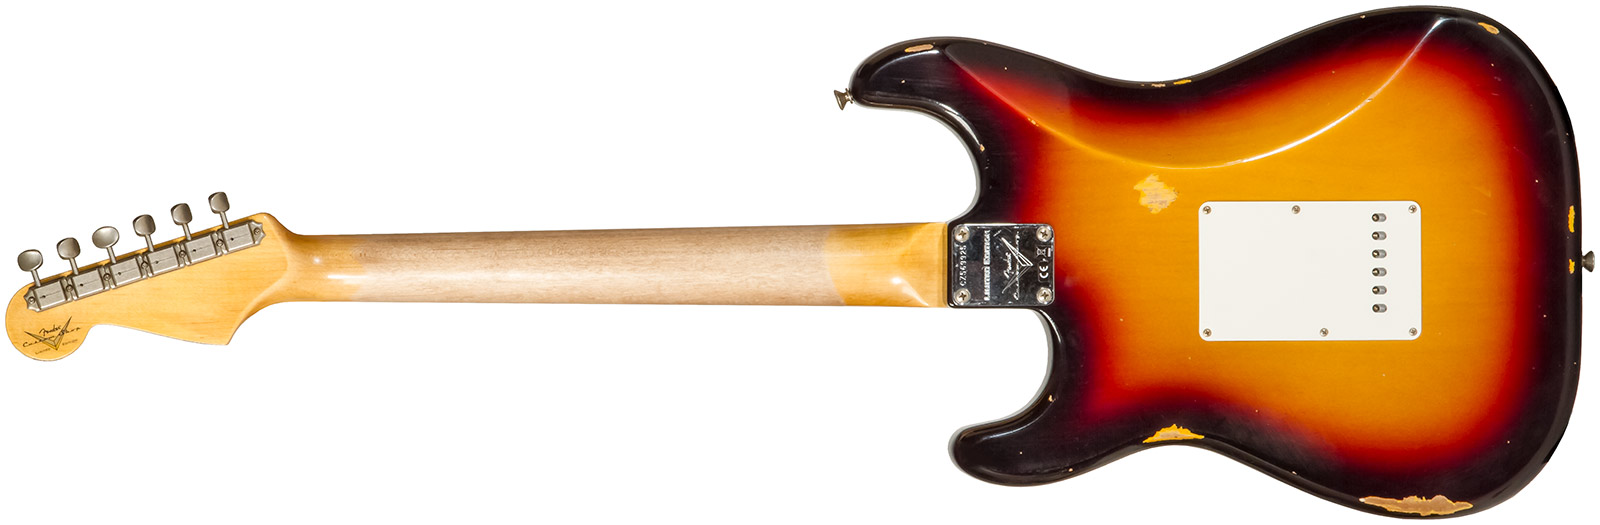 Fender Custom Shop Strat Late 1964 3s Trem Rw #cz569925 - Relic Target 3-color Sunburst - E-Gitarre in Str-Form - Variation 1